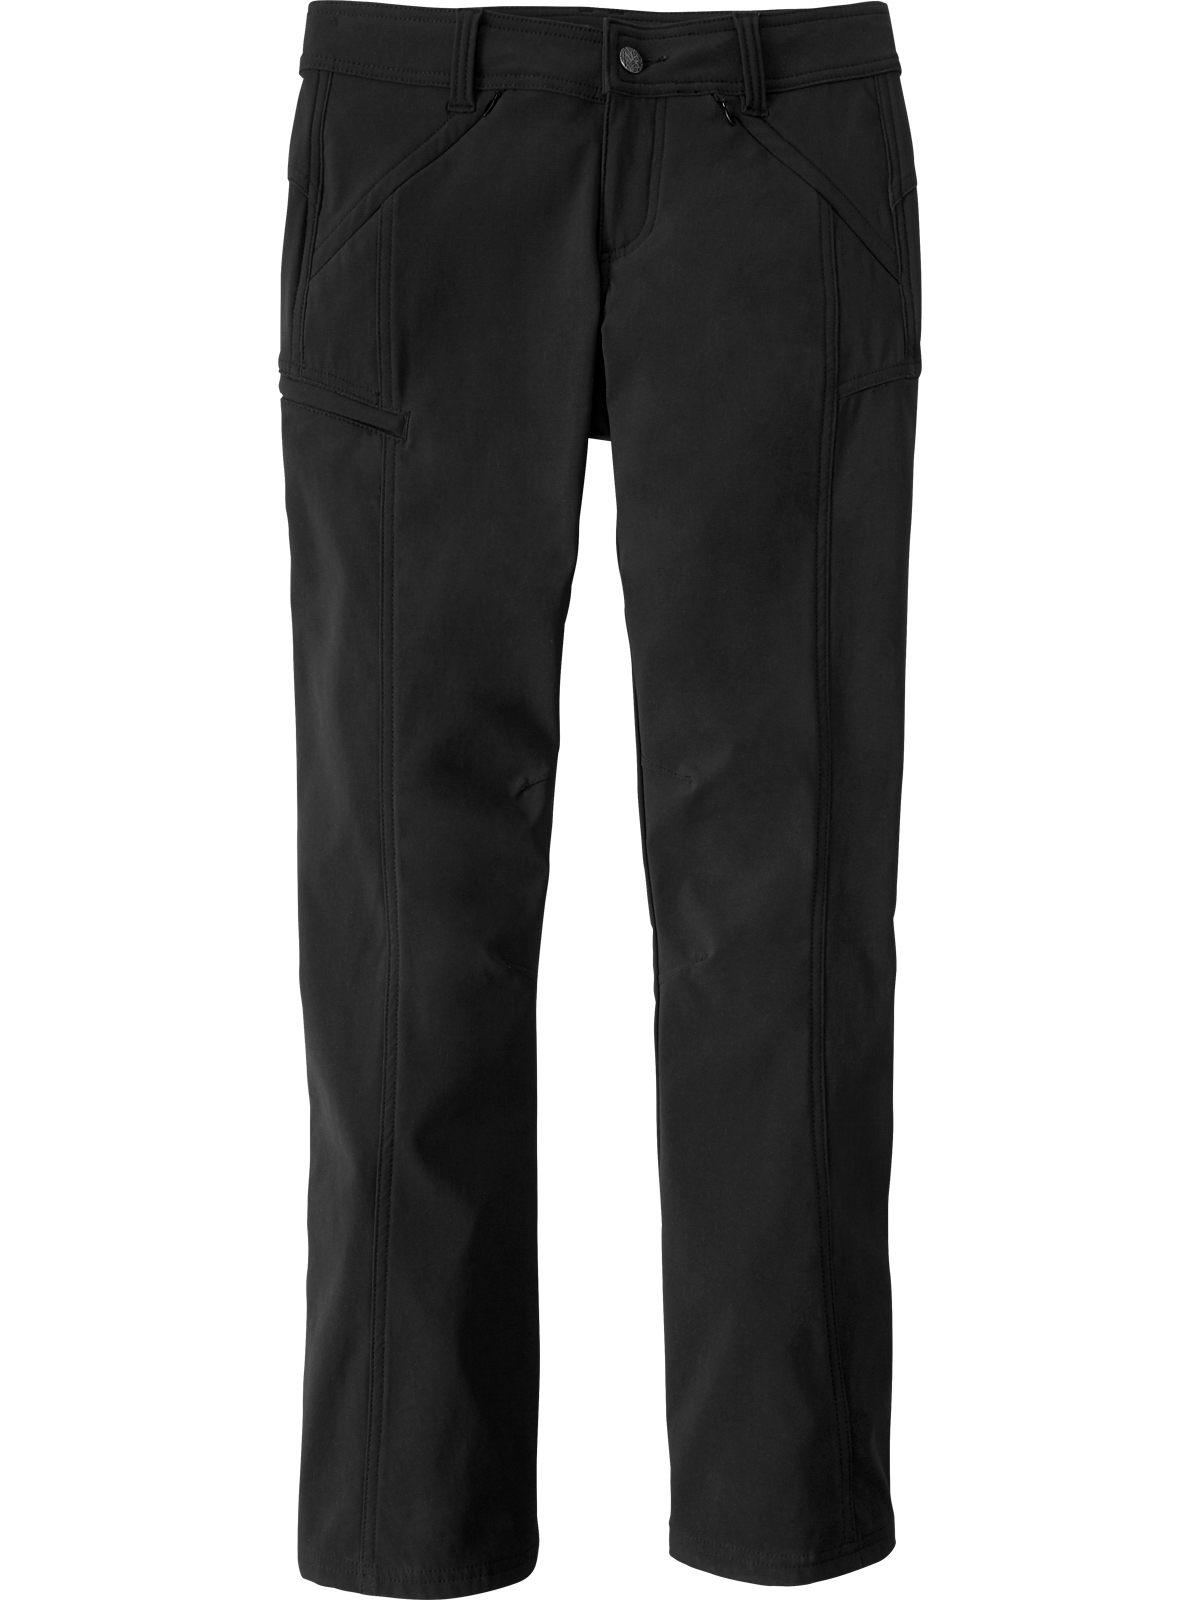 Prana Women Pants Black Size 12 W35L30 Fleece Lined Outdoor Winter